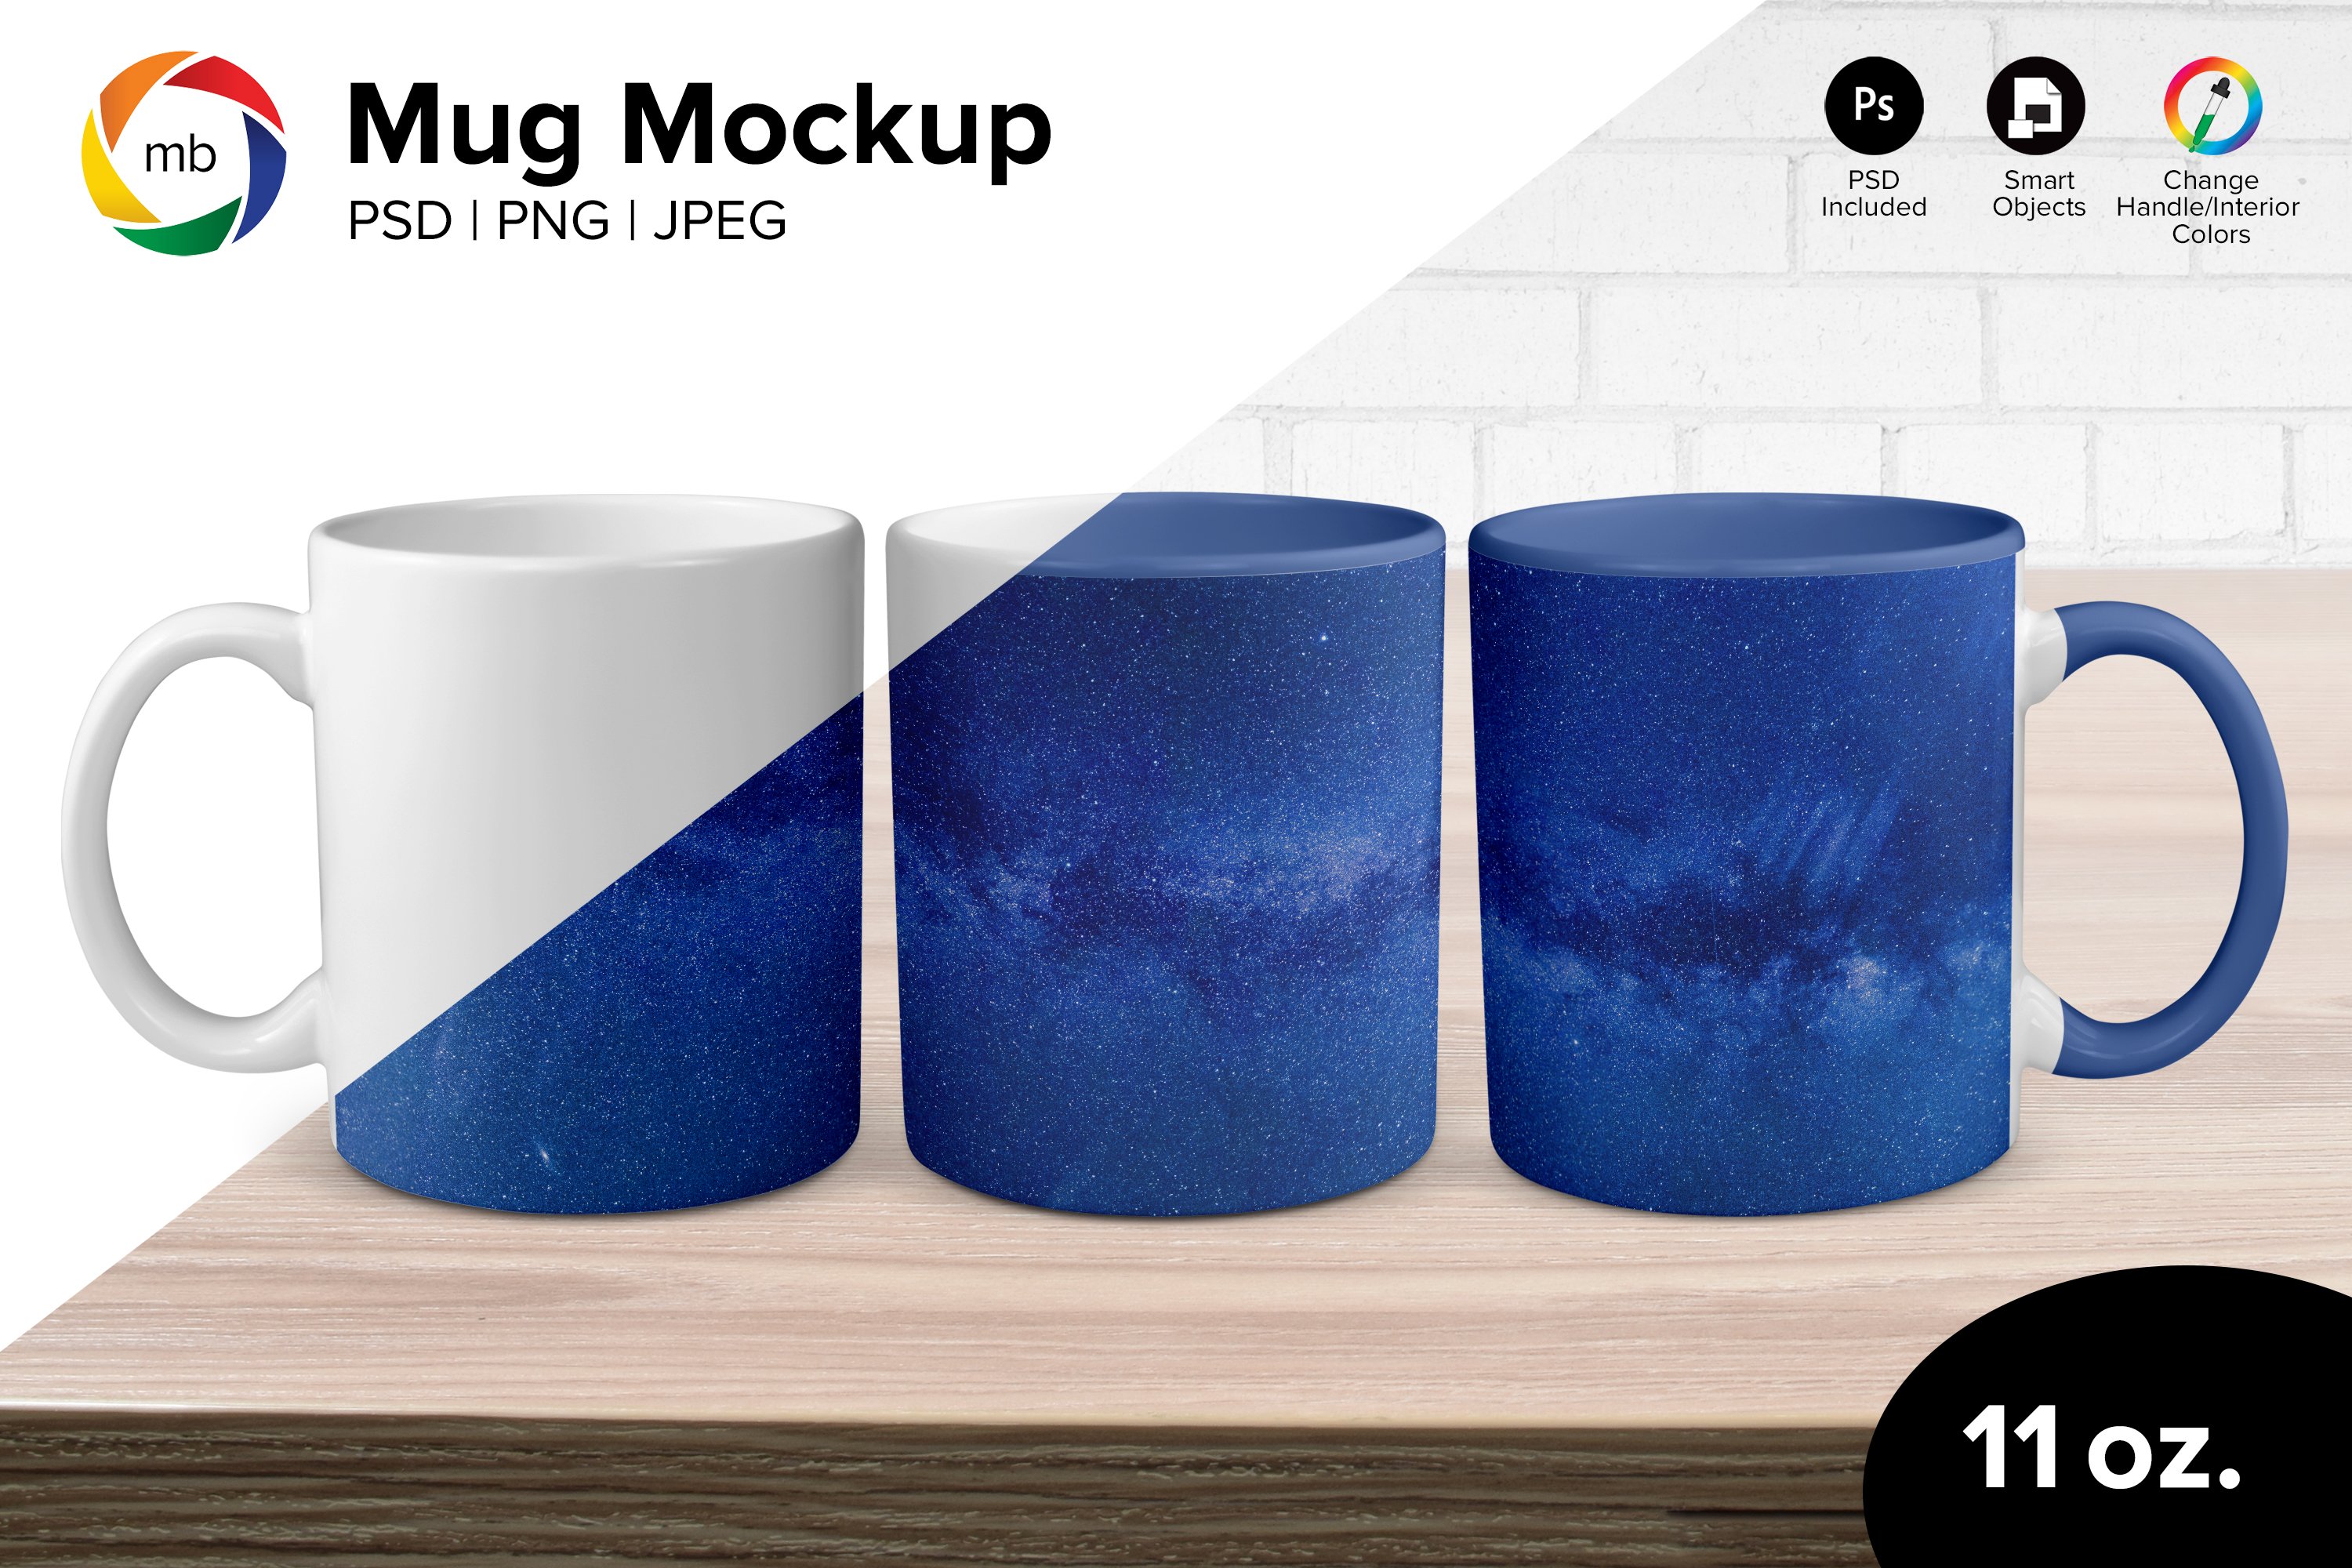 11 oz. Full Wrap Mug Mockup cover image.